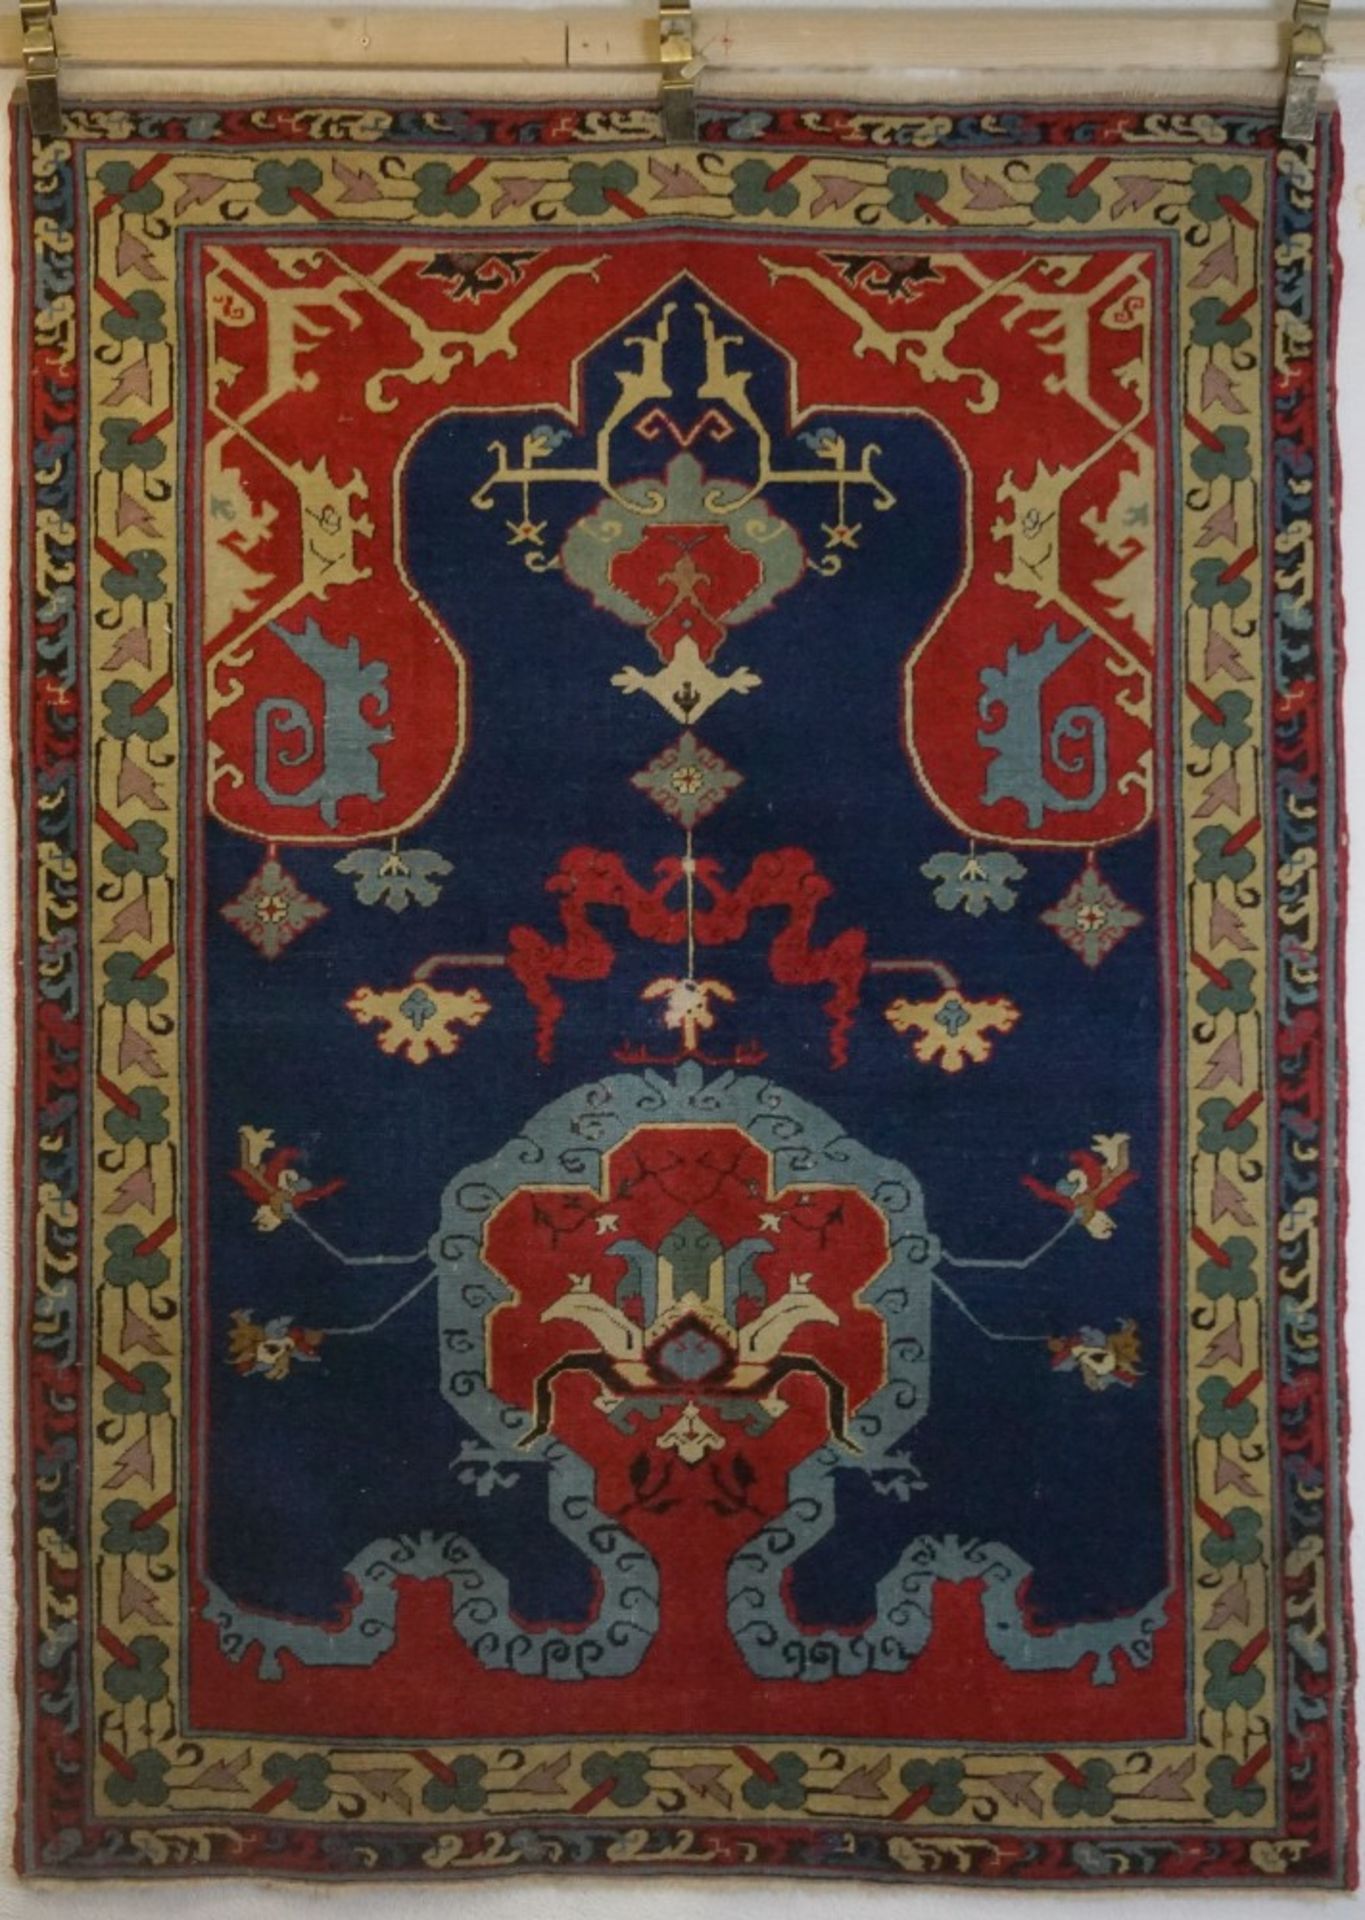 Anatolischer Teppich, Türkeica. 100 Jahre alt, Länge 1,70m x Breite 1,27m, in einem guten Zustand